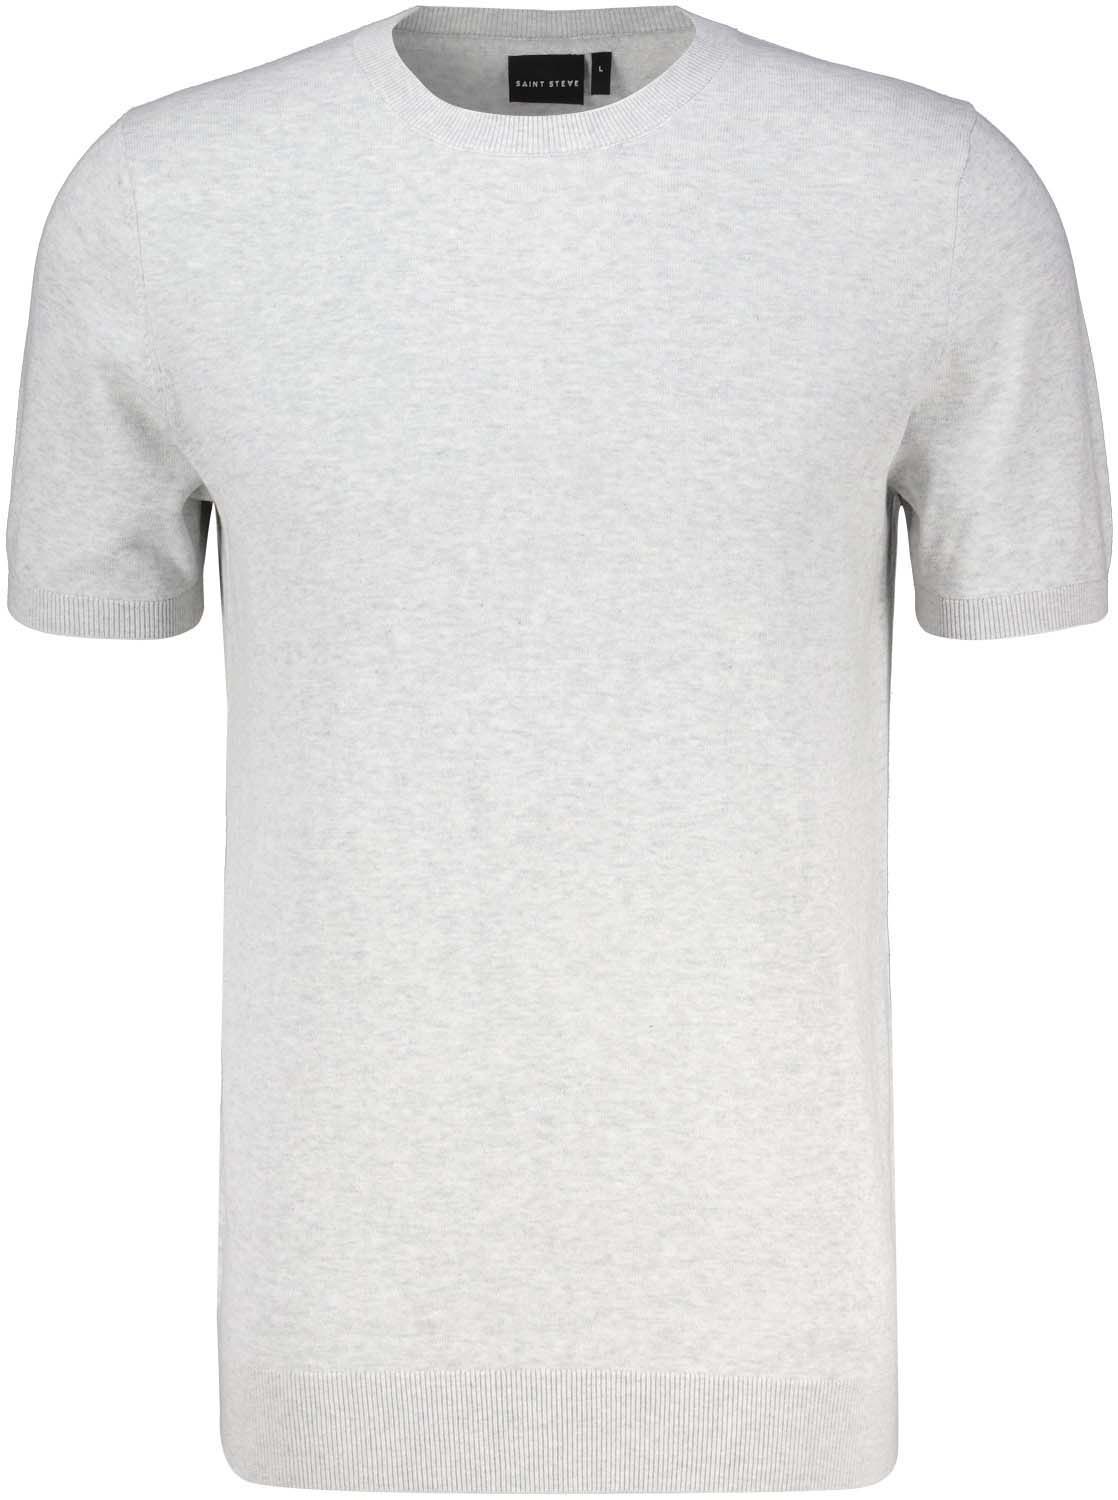 T-shirt Boudewijn Wit